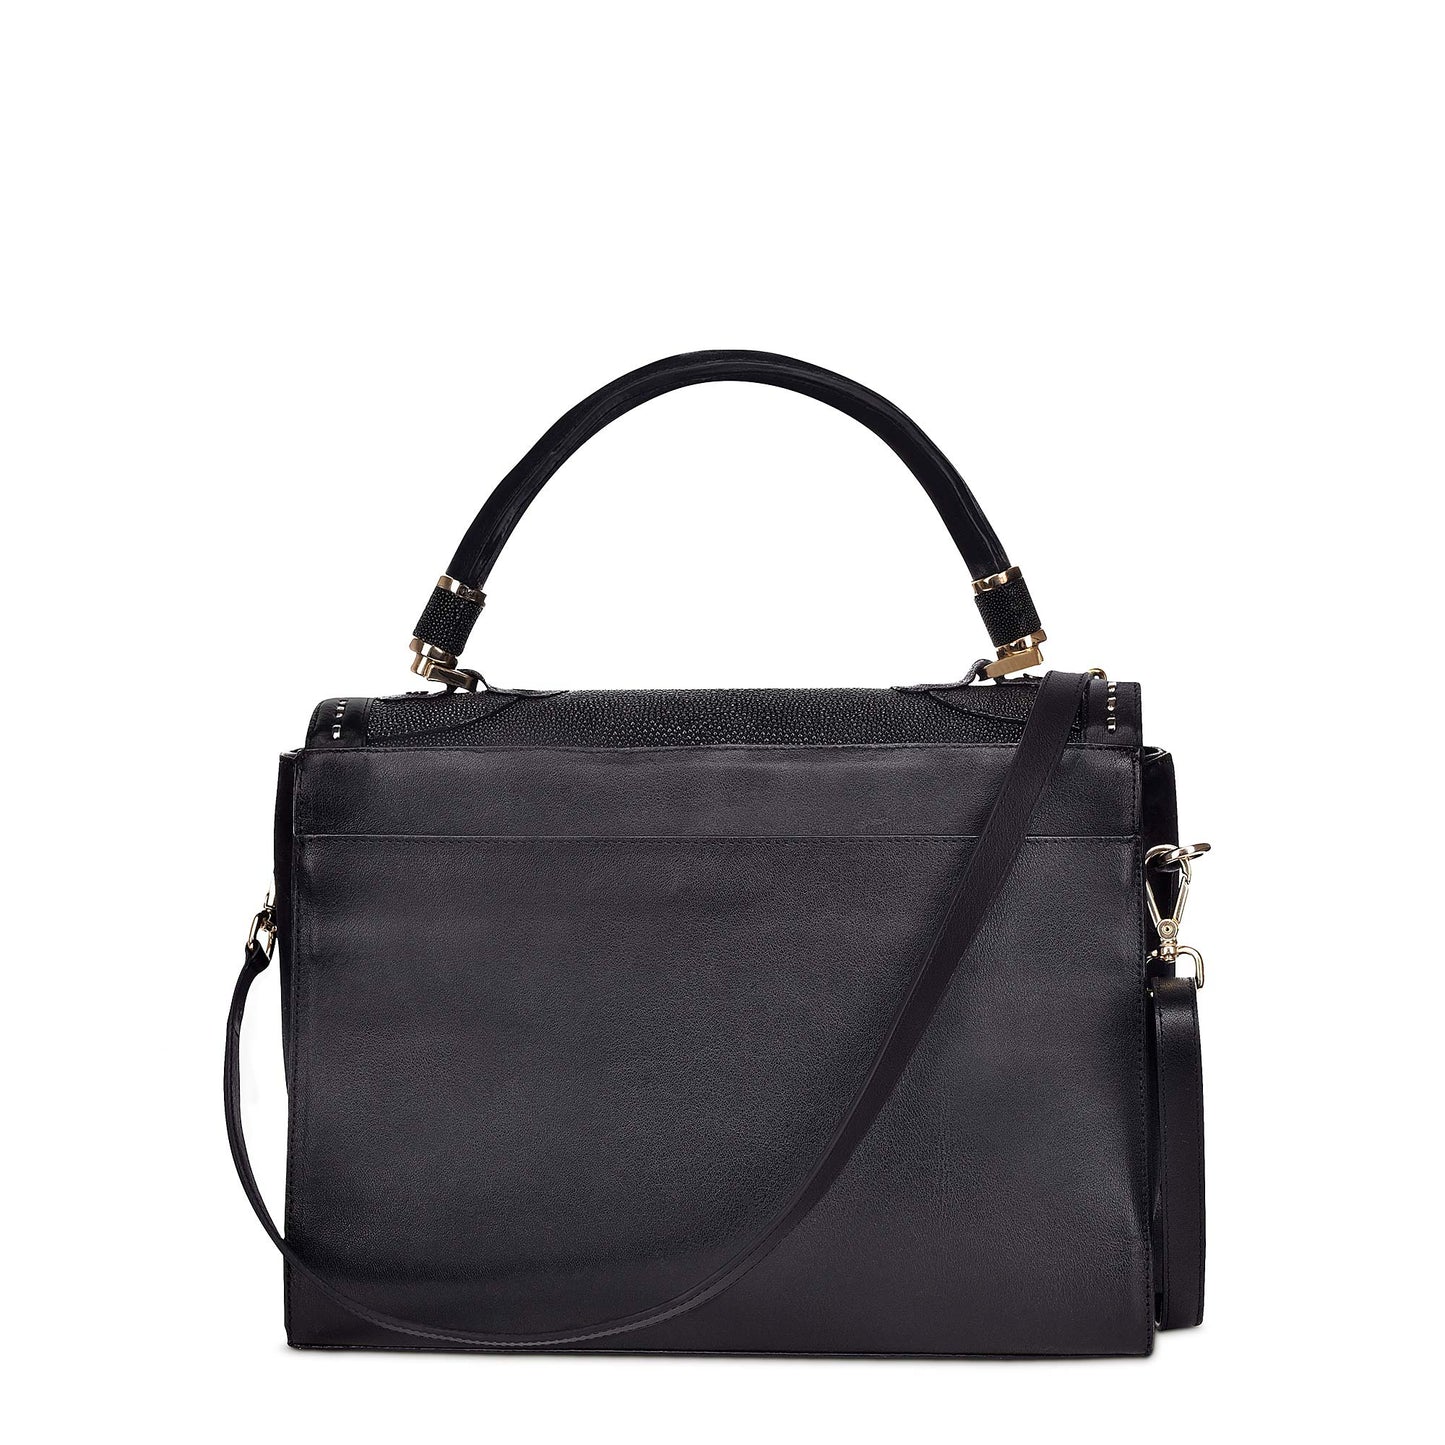 BO376MA - Cuadra black fashion stingray leather ladies purse handbag for women-CUADRA-Kuet-Cuadra-Boots